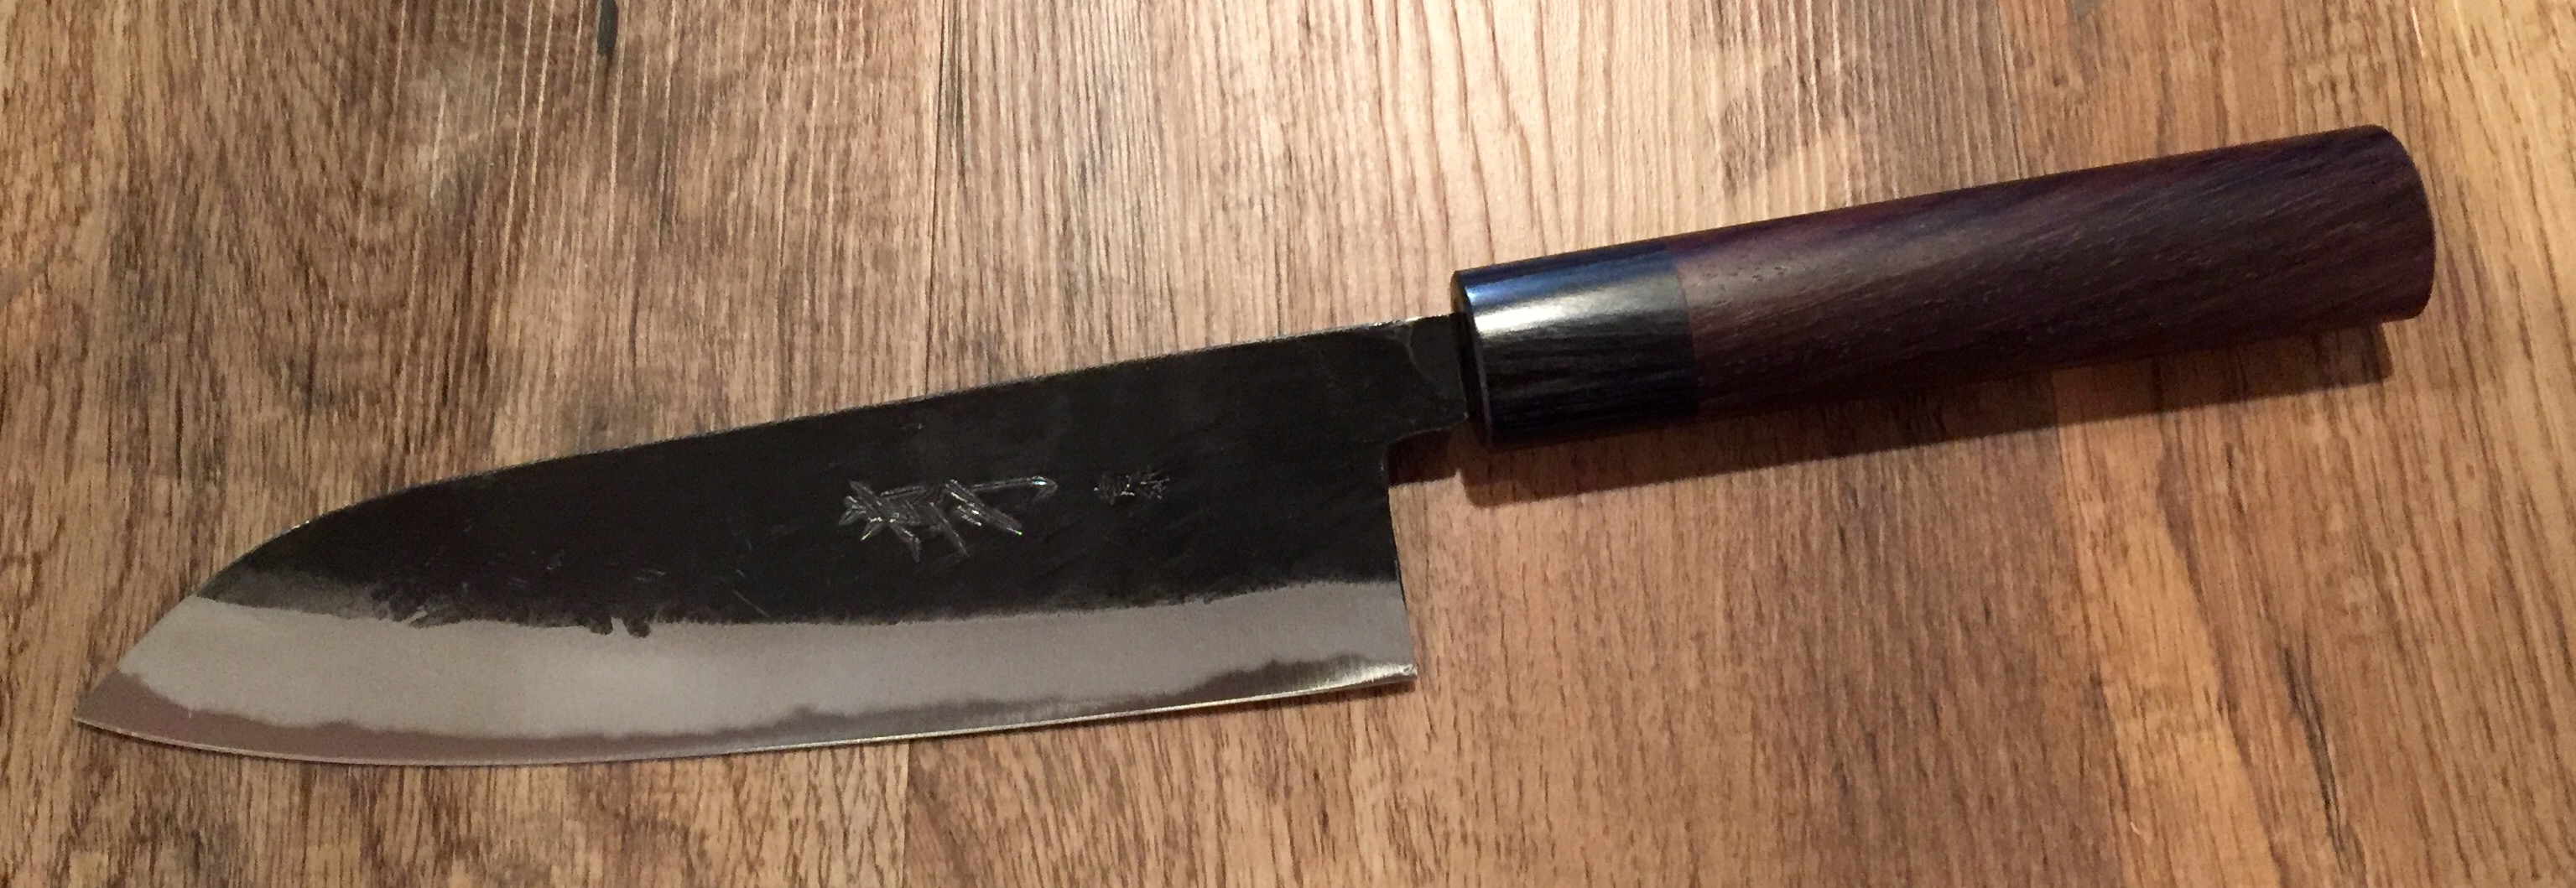 couteaux artisanaux sakai takayuki